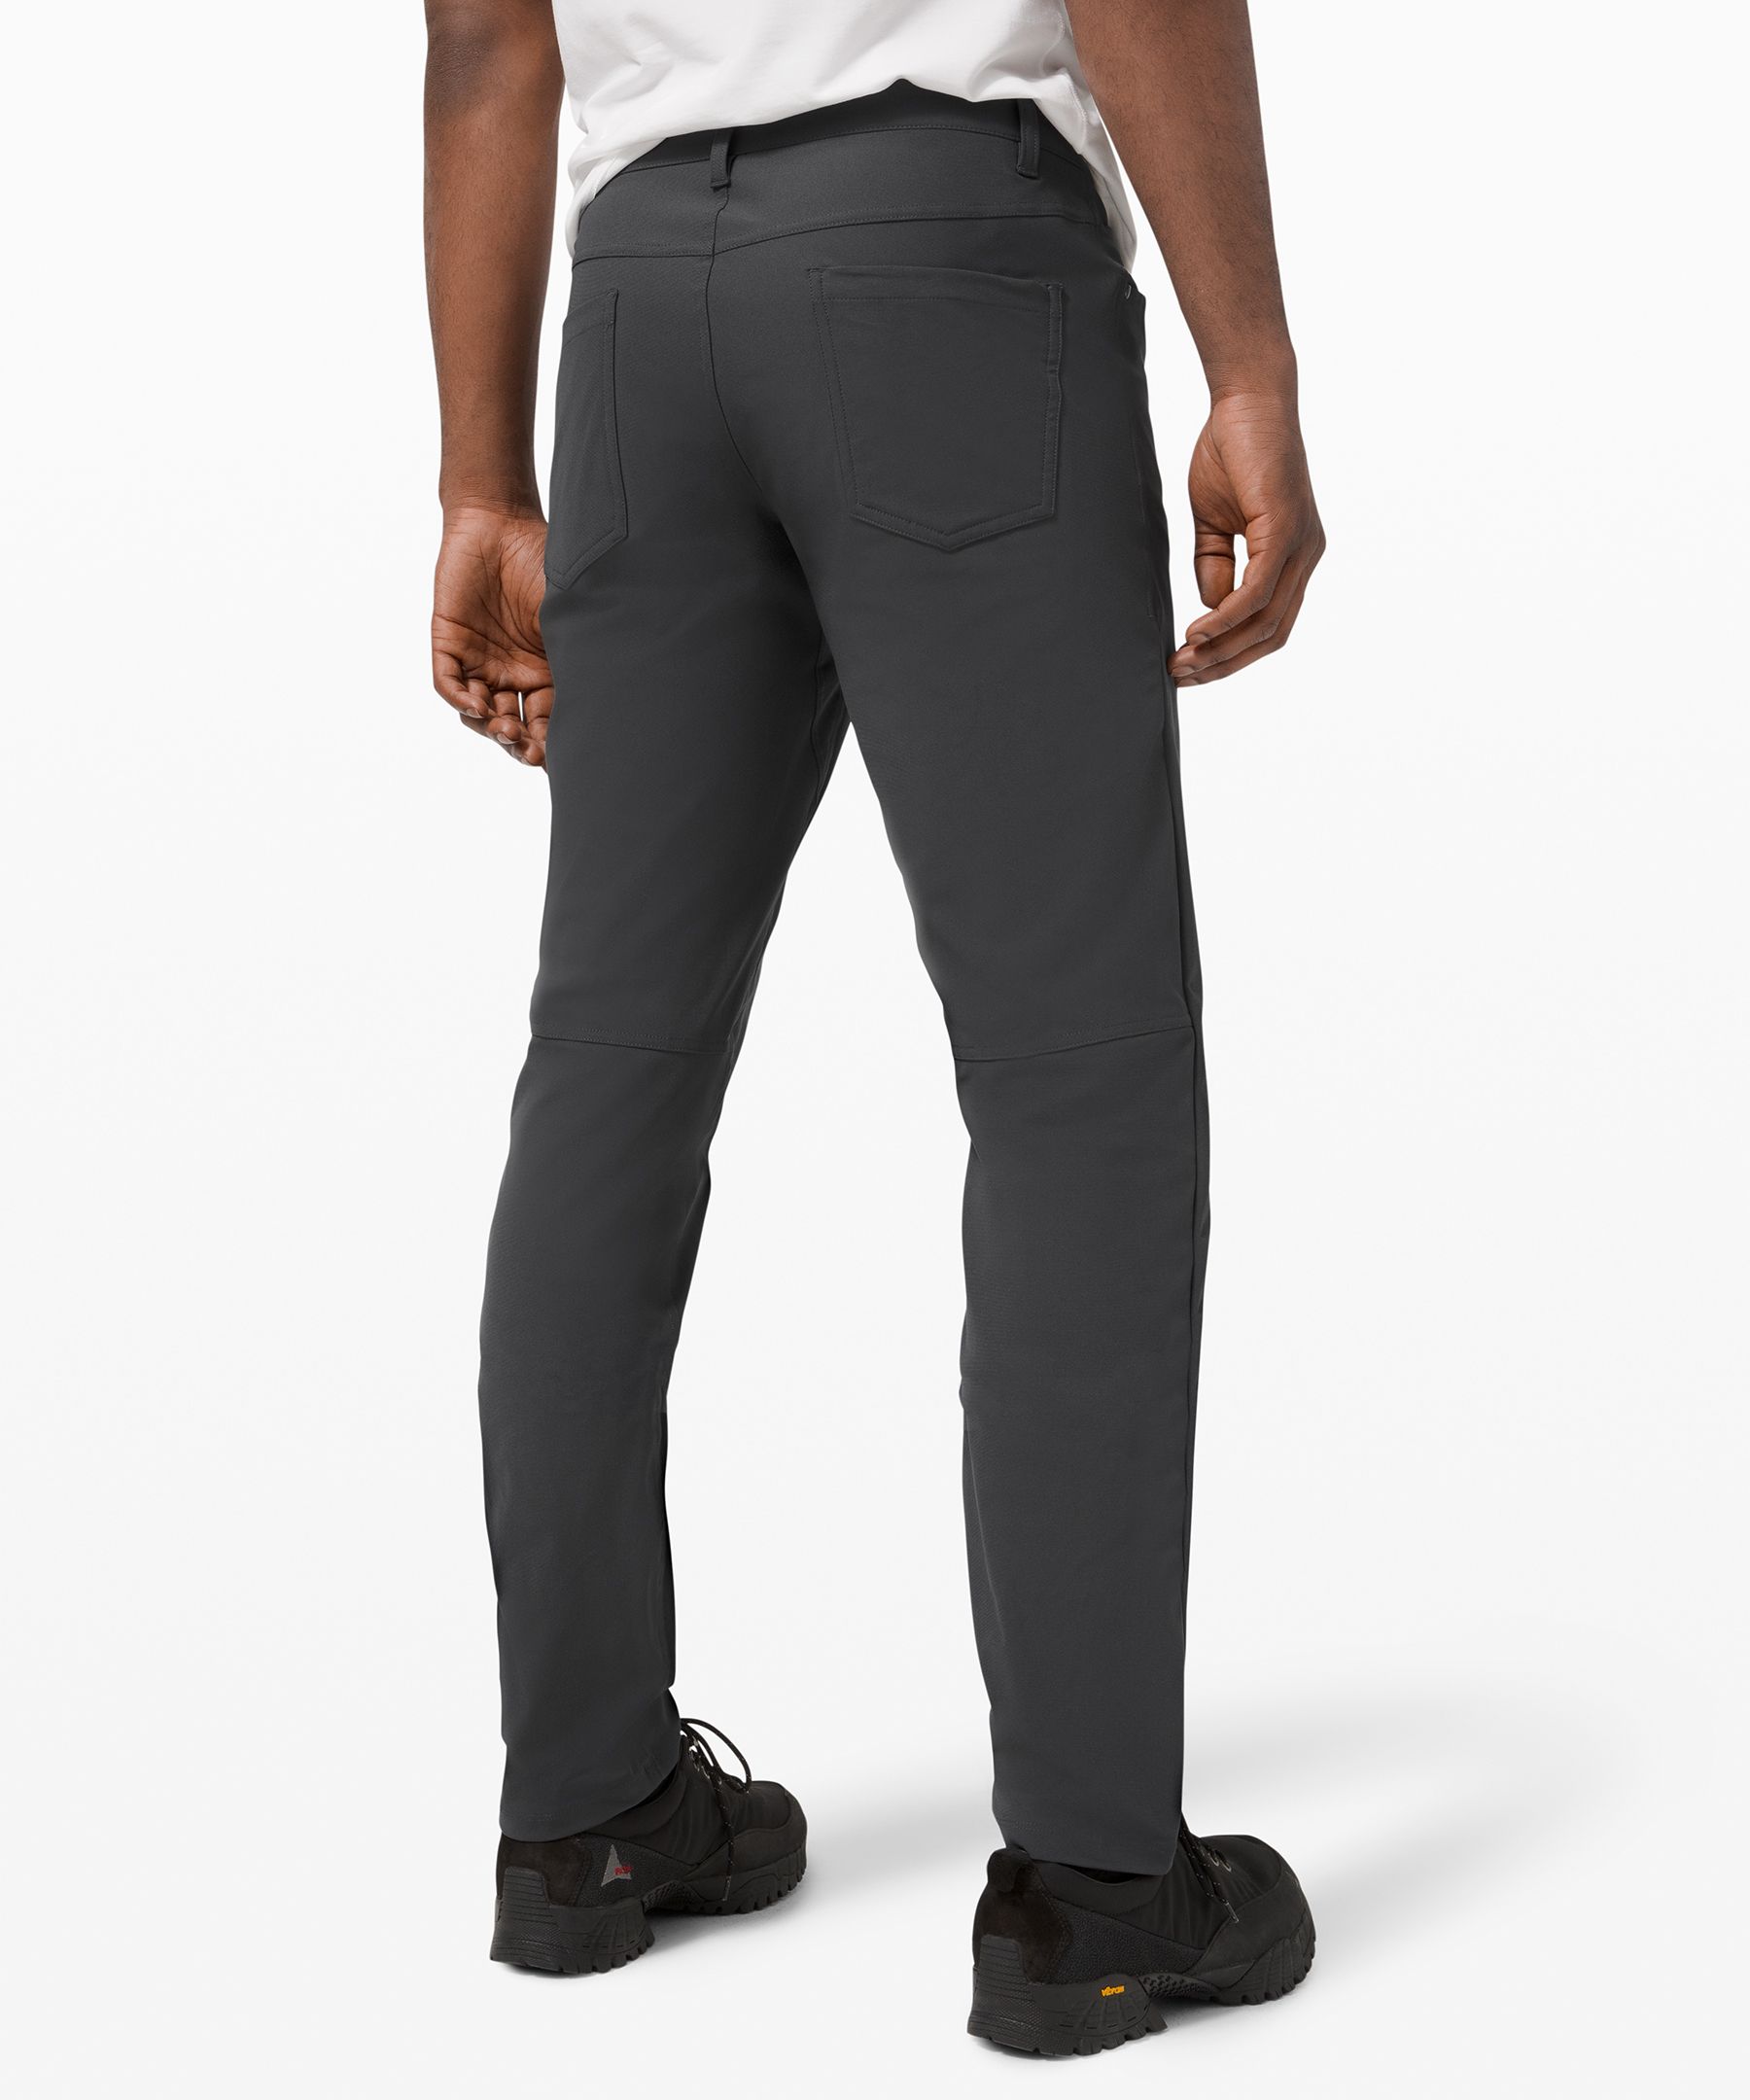 Lululemon athletica ABC Classic-Fit 5 Pocket Pant 32 *Utilitech, Men's  Trousers